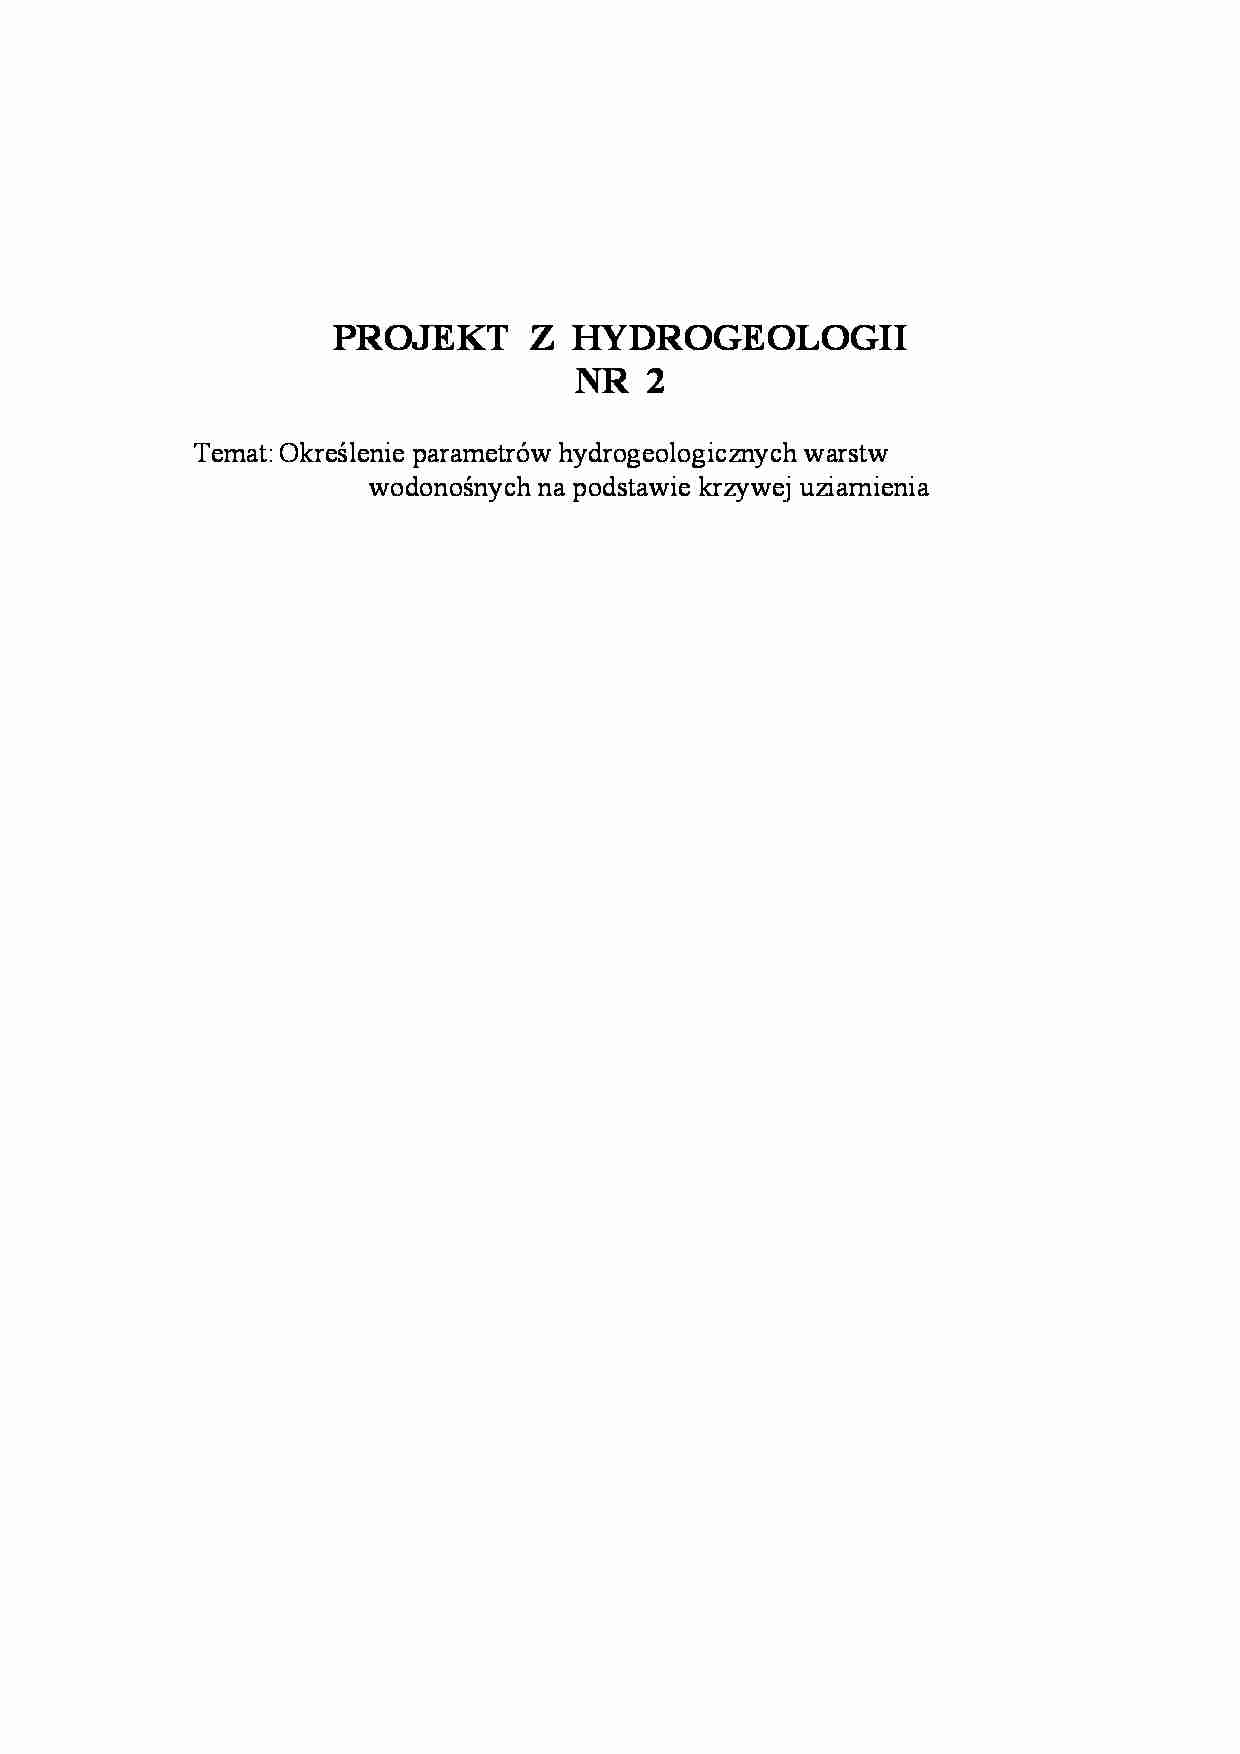 Określenie parametrów hydrogeologicznych warstw wodonożnych - strona 1